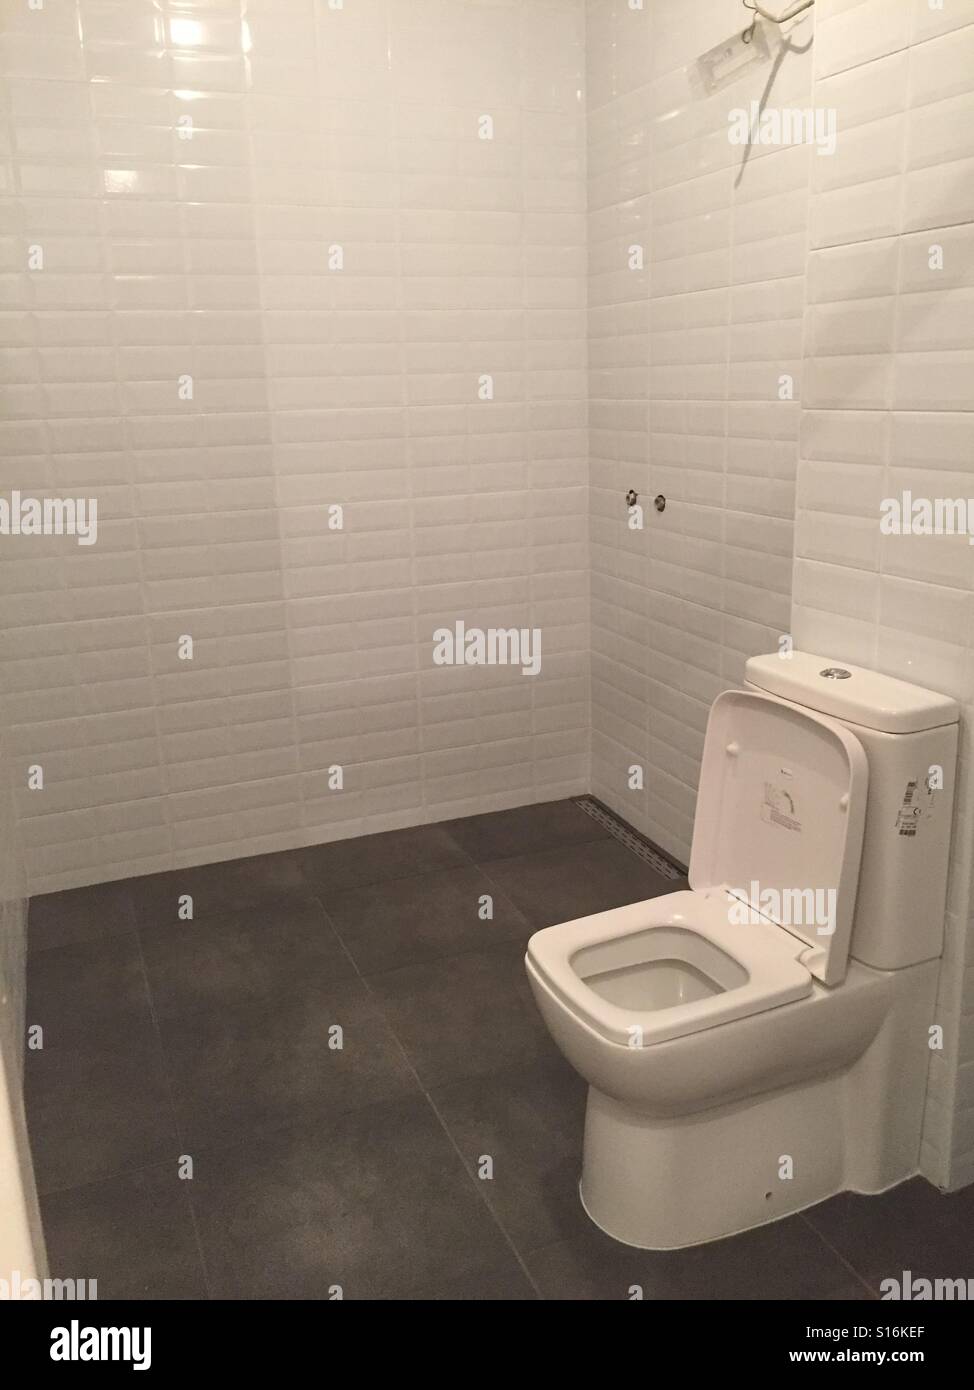 Toilet Stock Photo